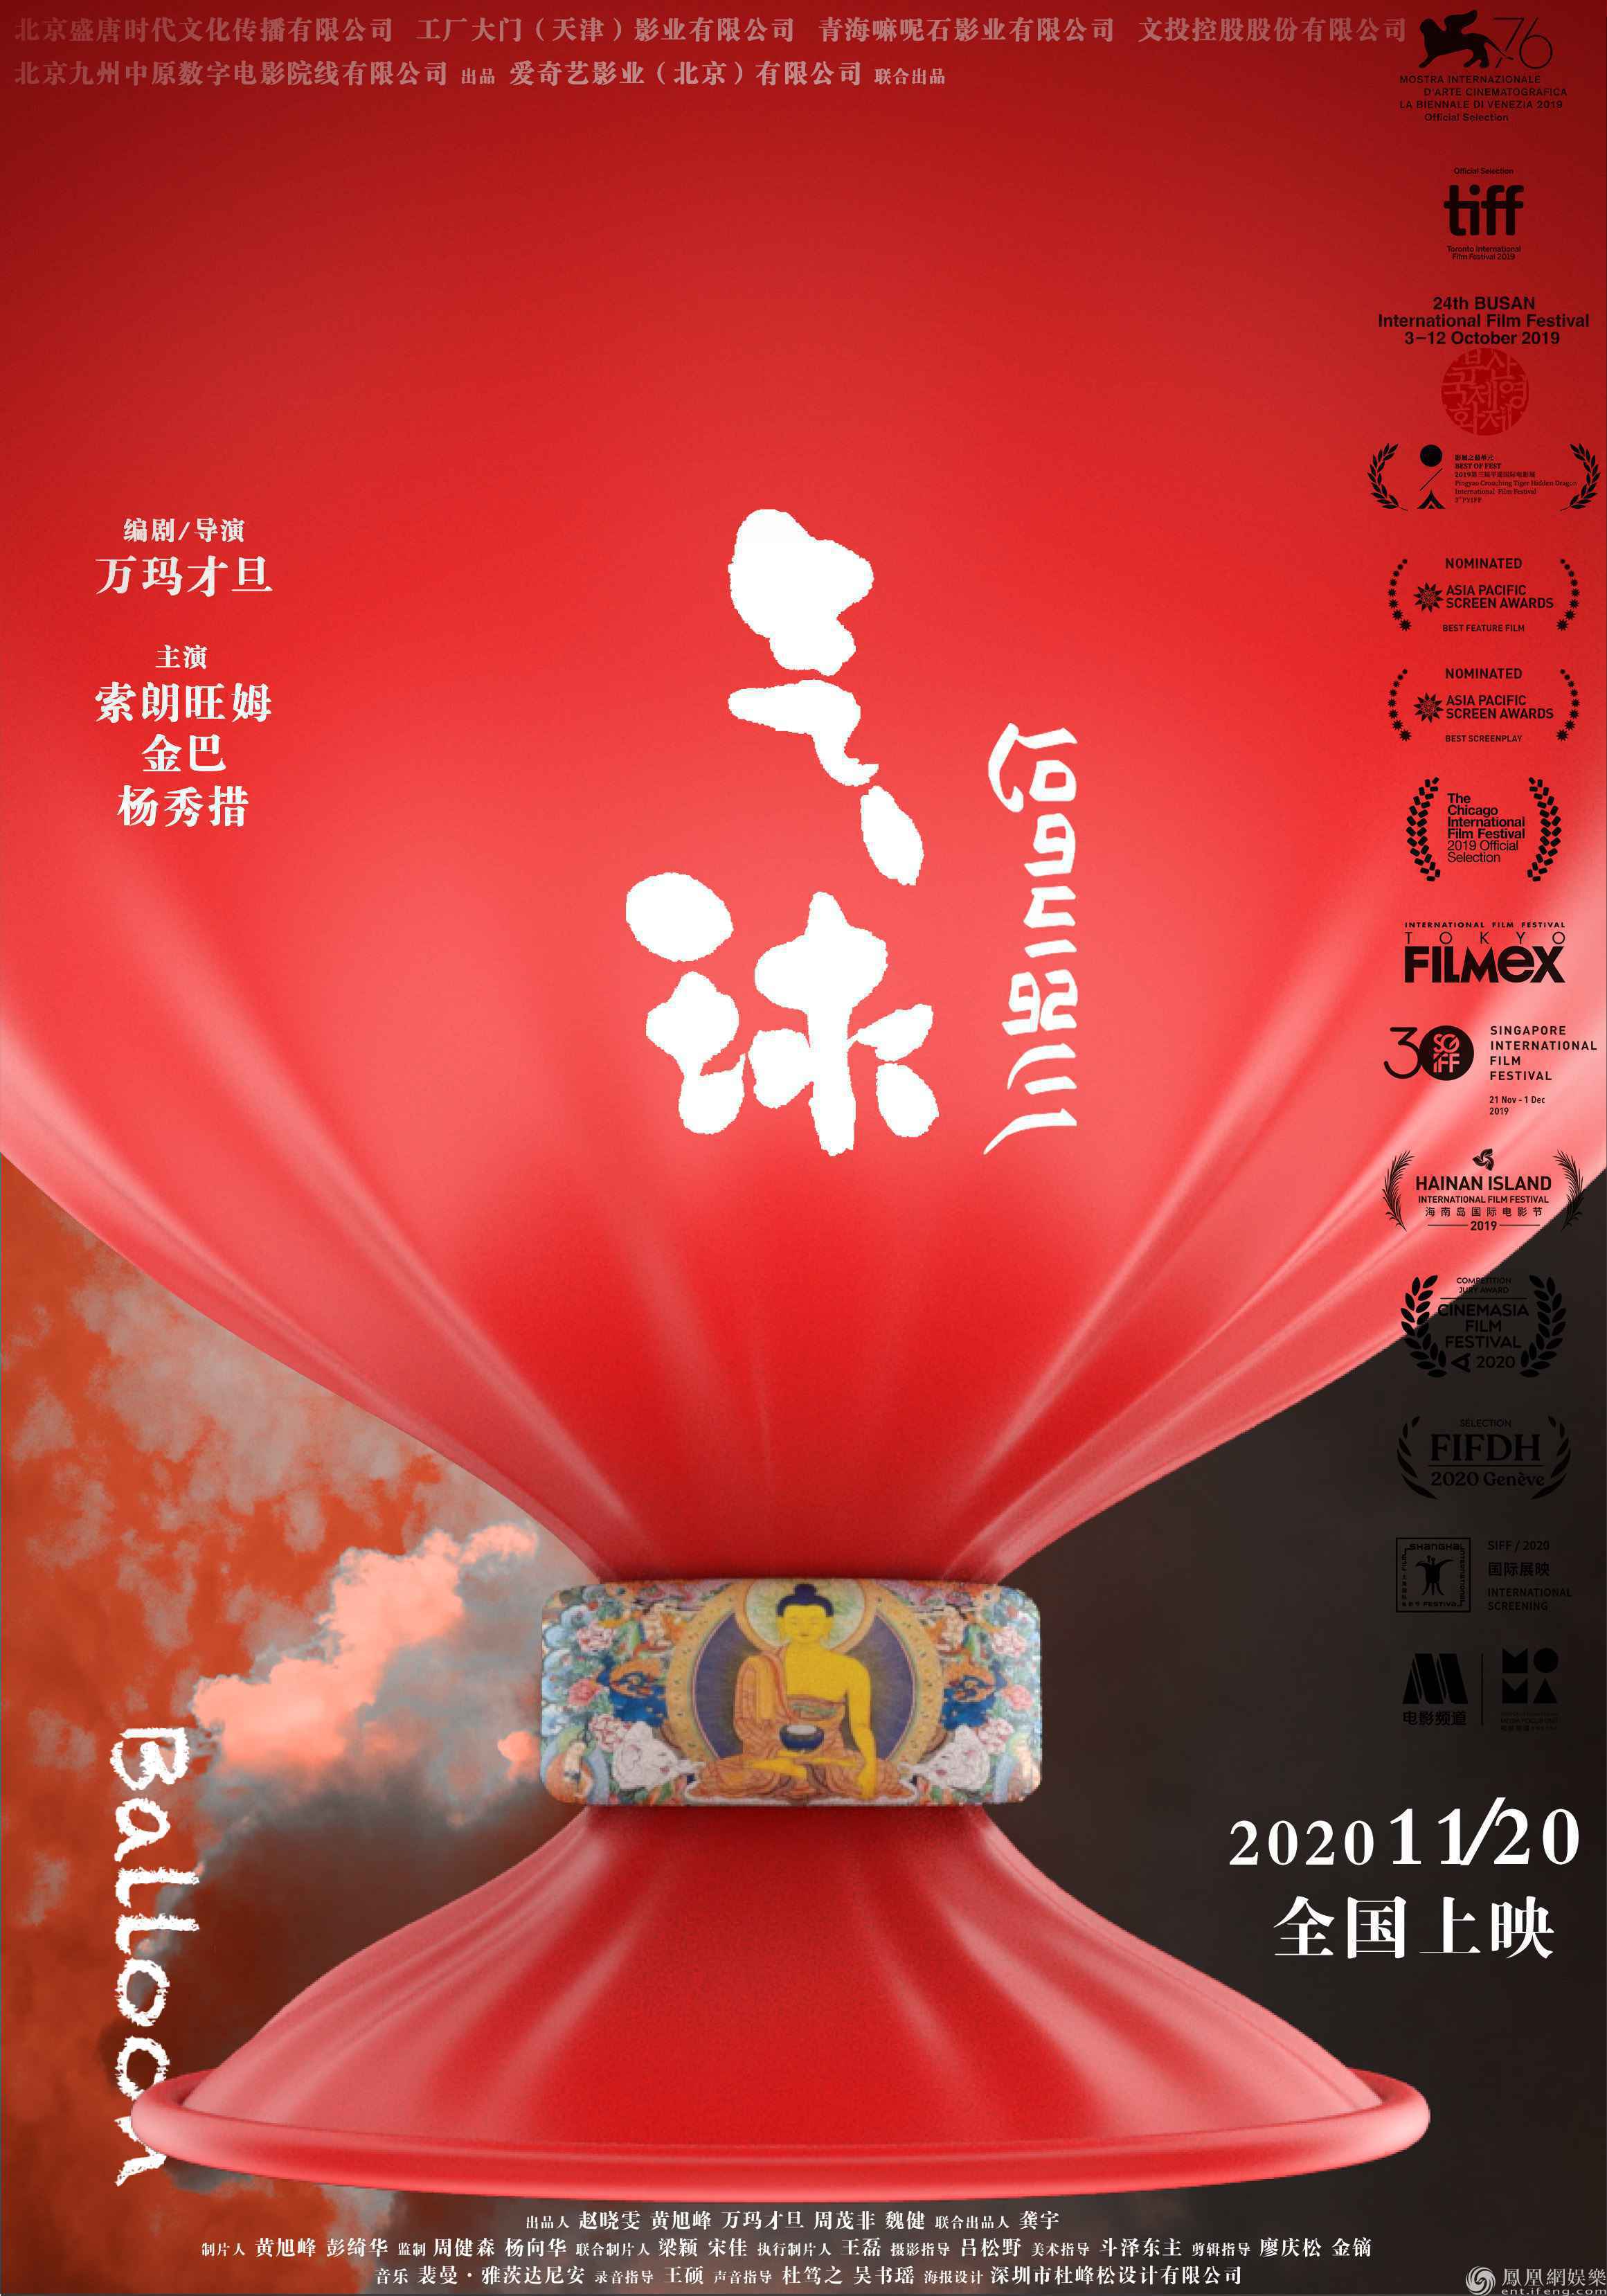 万玛才旦新作《气球》定档11月20日全国上映